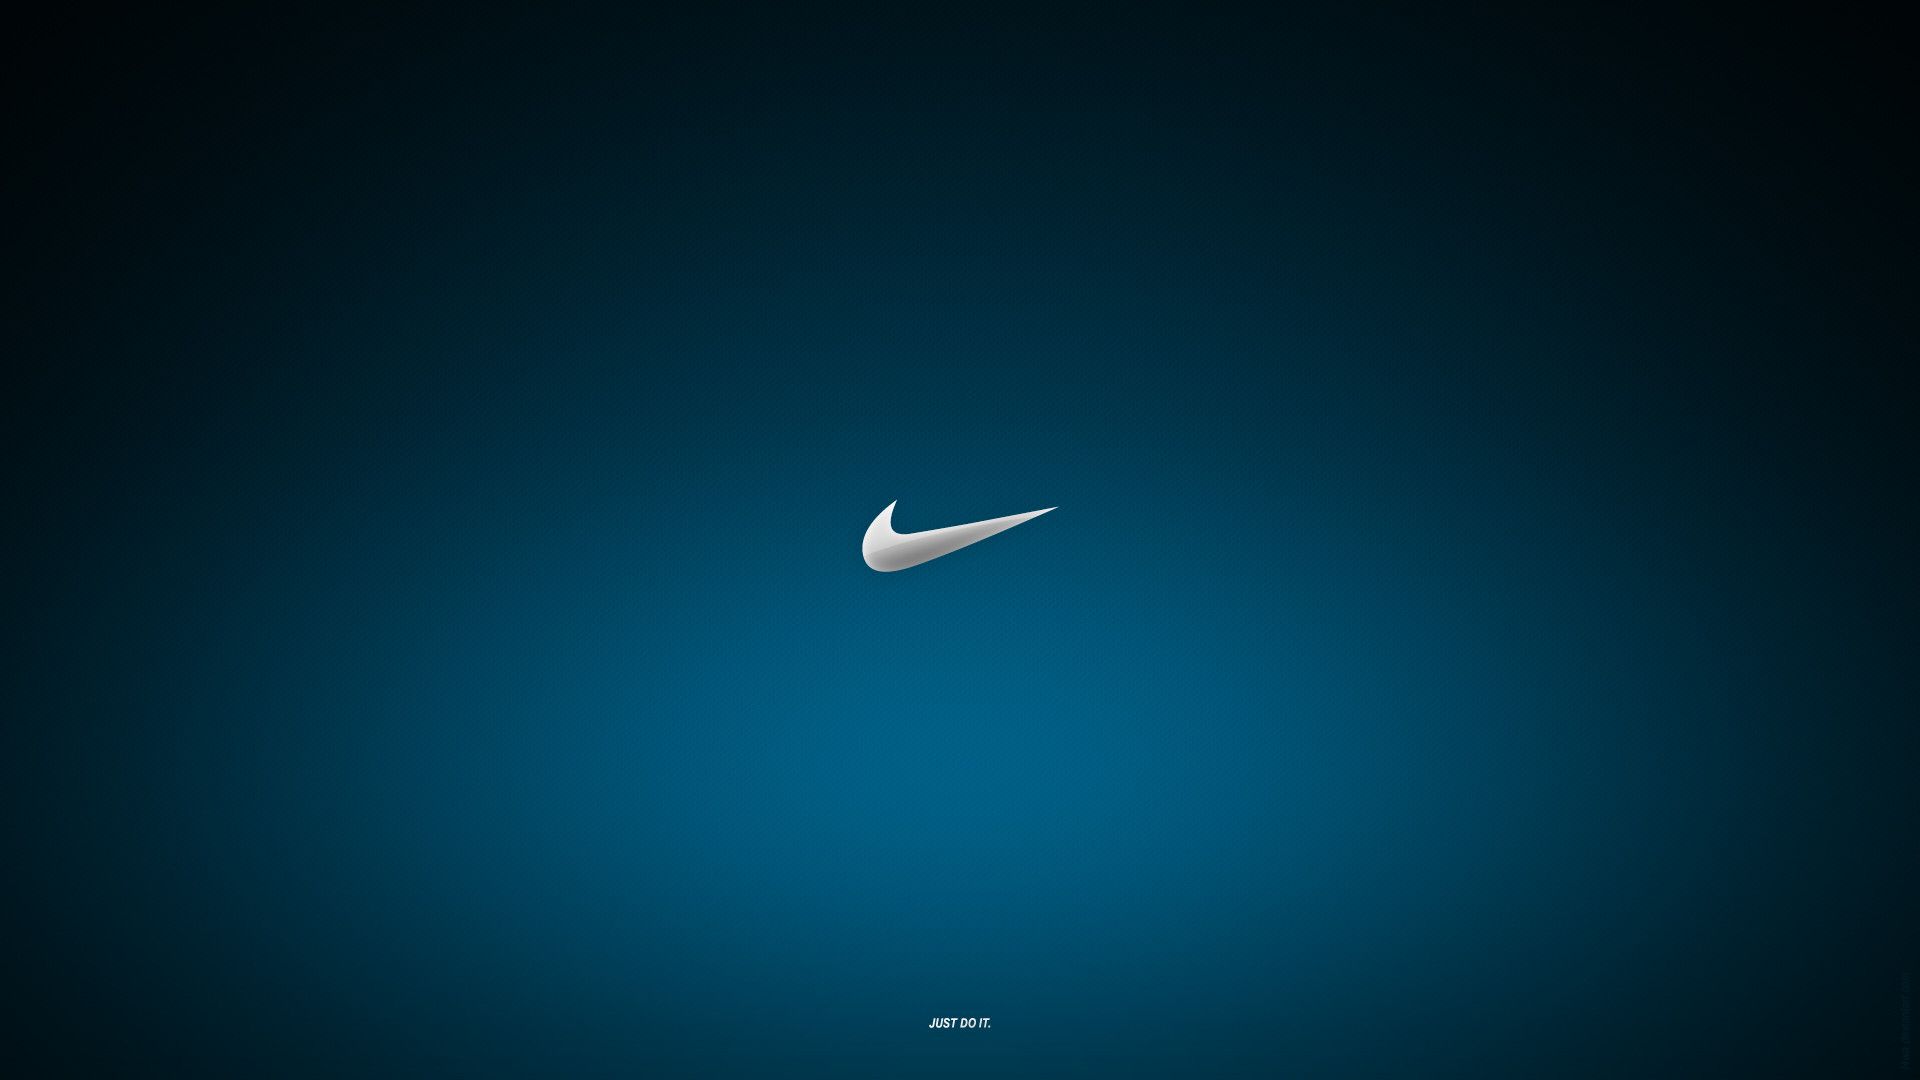 Nike Wallpaper For Laptop